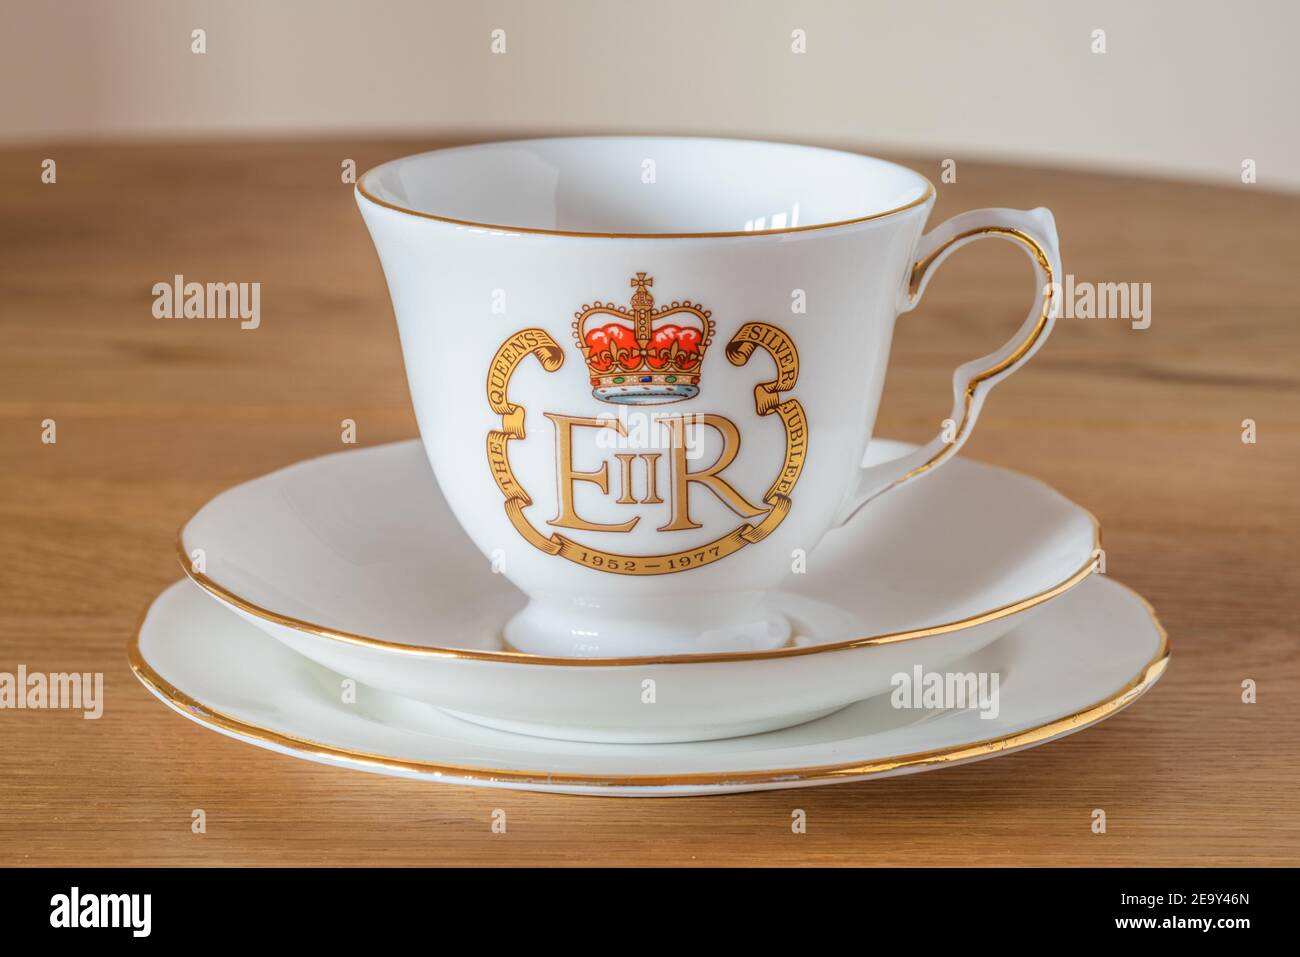 Vintage bone china vaisselle édition spéciale Royal Silver Jubilee, coupe et soucoupe sur plaque avec le Royal cypher EIIR 1977 - Queen Elizabeth ii, Royaume-Uni Banque D'Images